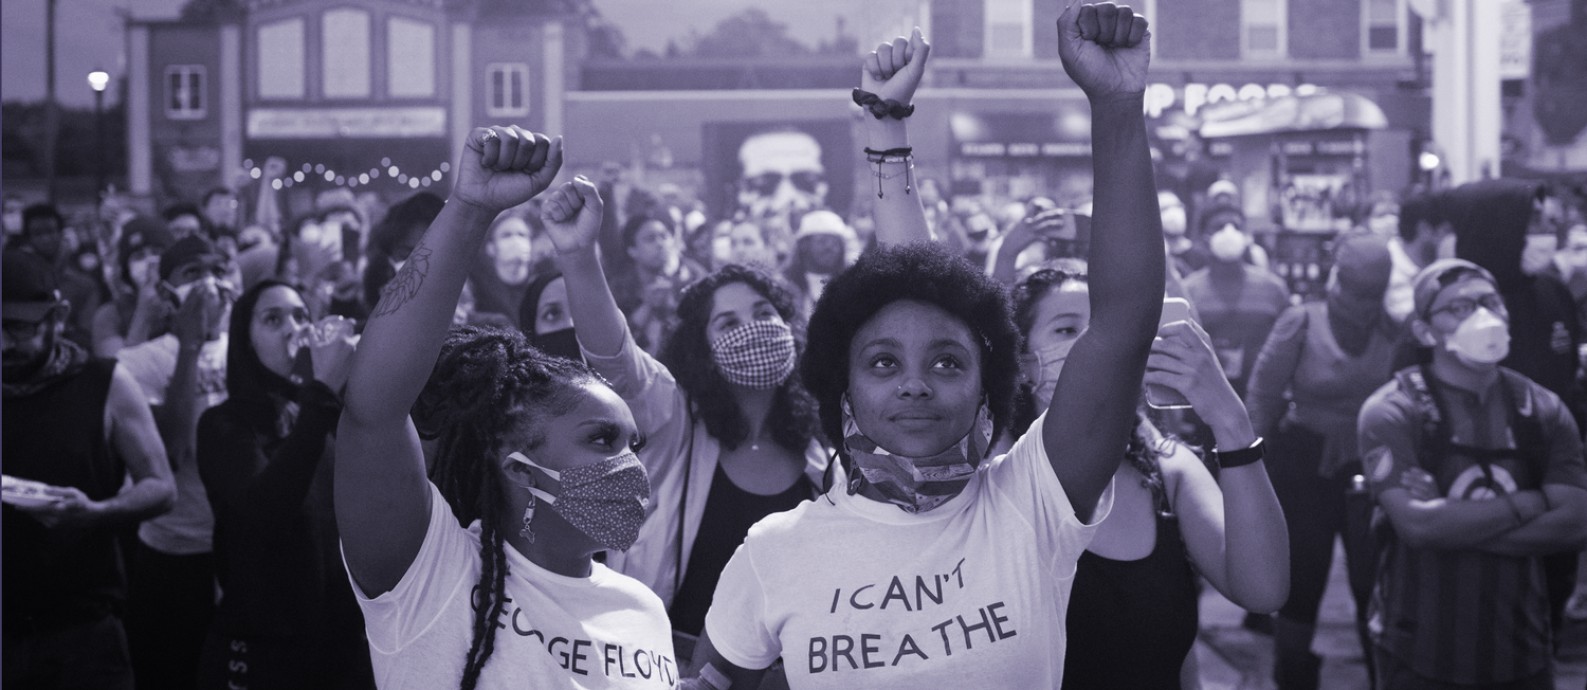 Ativistas do movimento dos Direitos Civis, que marcharam pelos EUA nos anos 60, celebram movimento Black Lives Matter Foto: New York Times